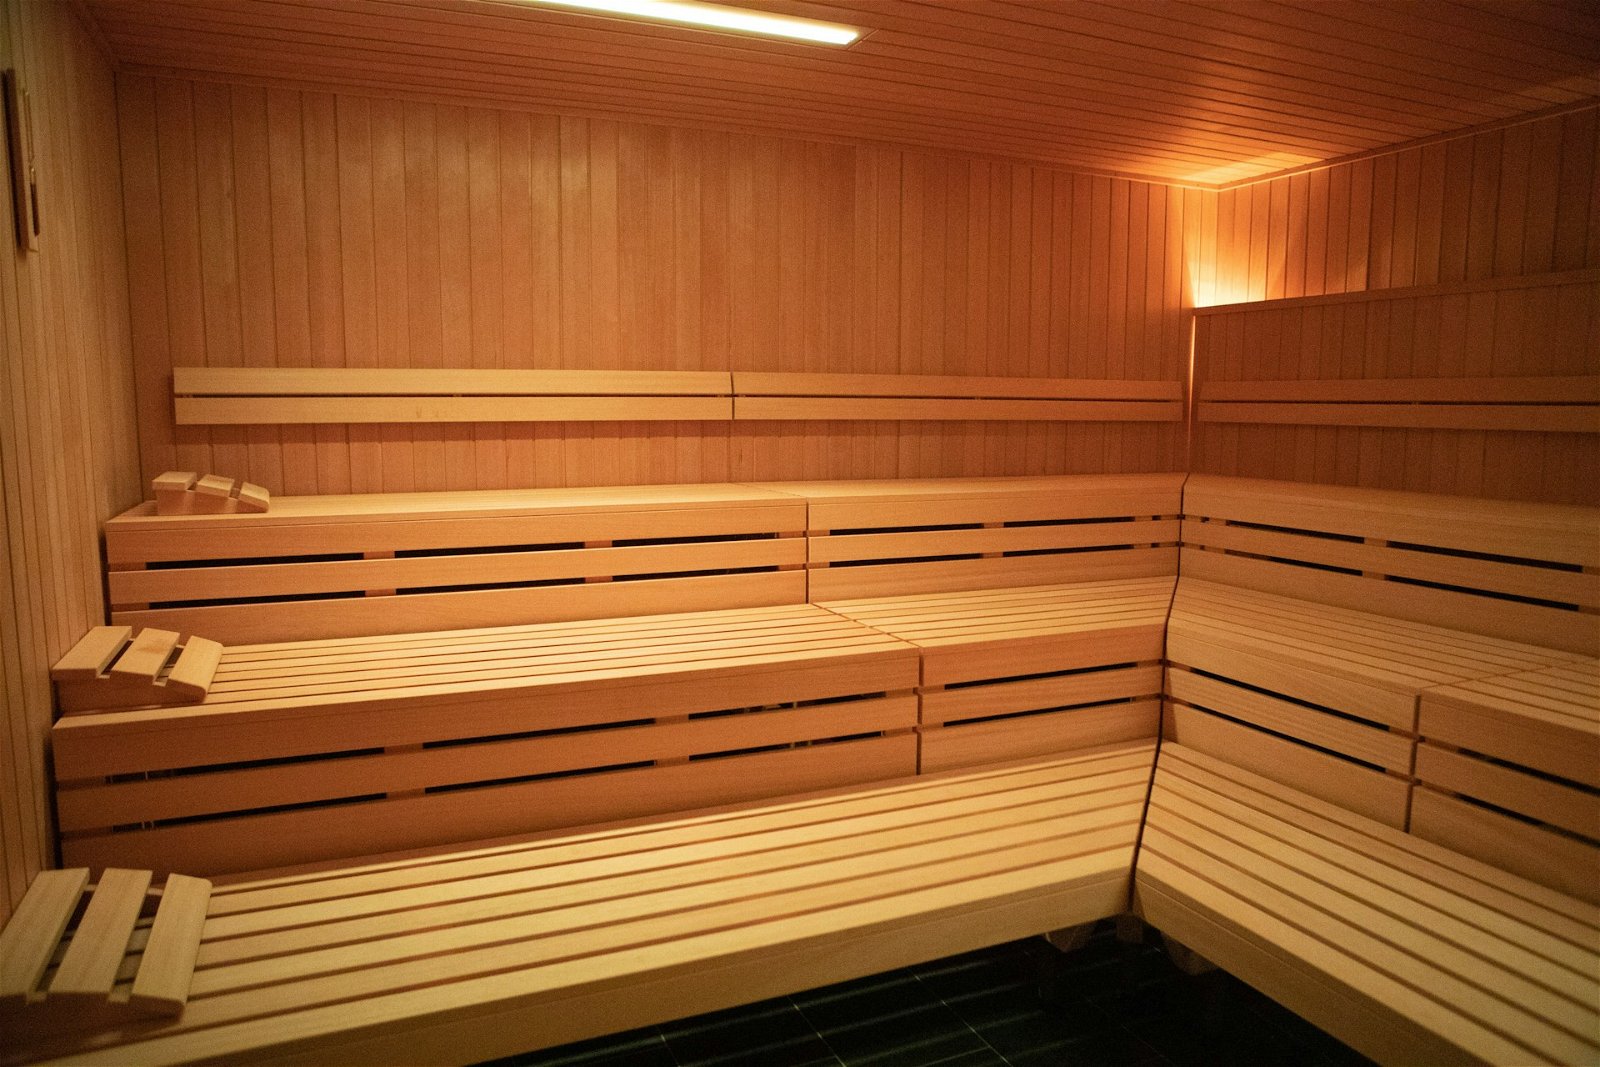 Immagine di Lavorare nudi in sauna: la richiesta choc di uno studio di sviluppo porta a scuse pubbliche